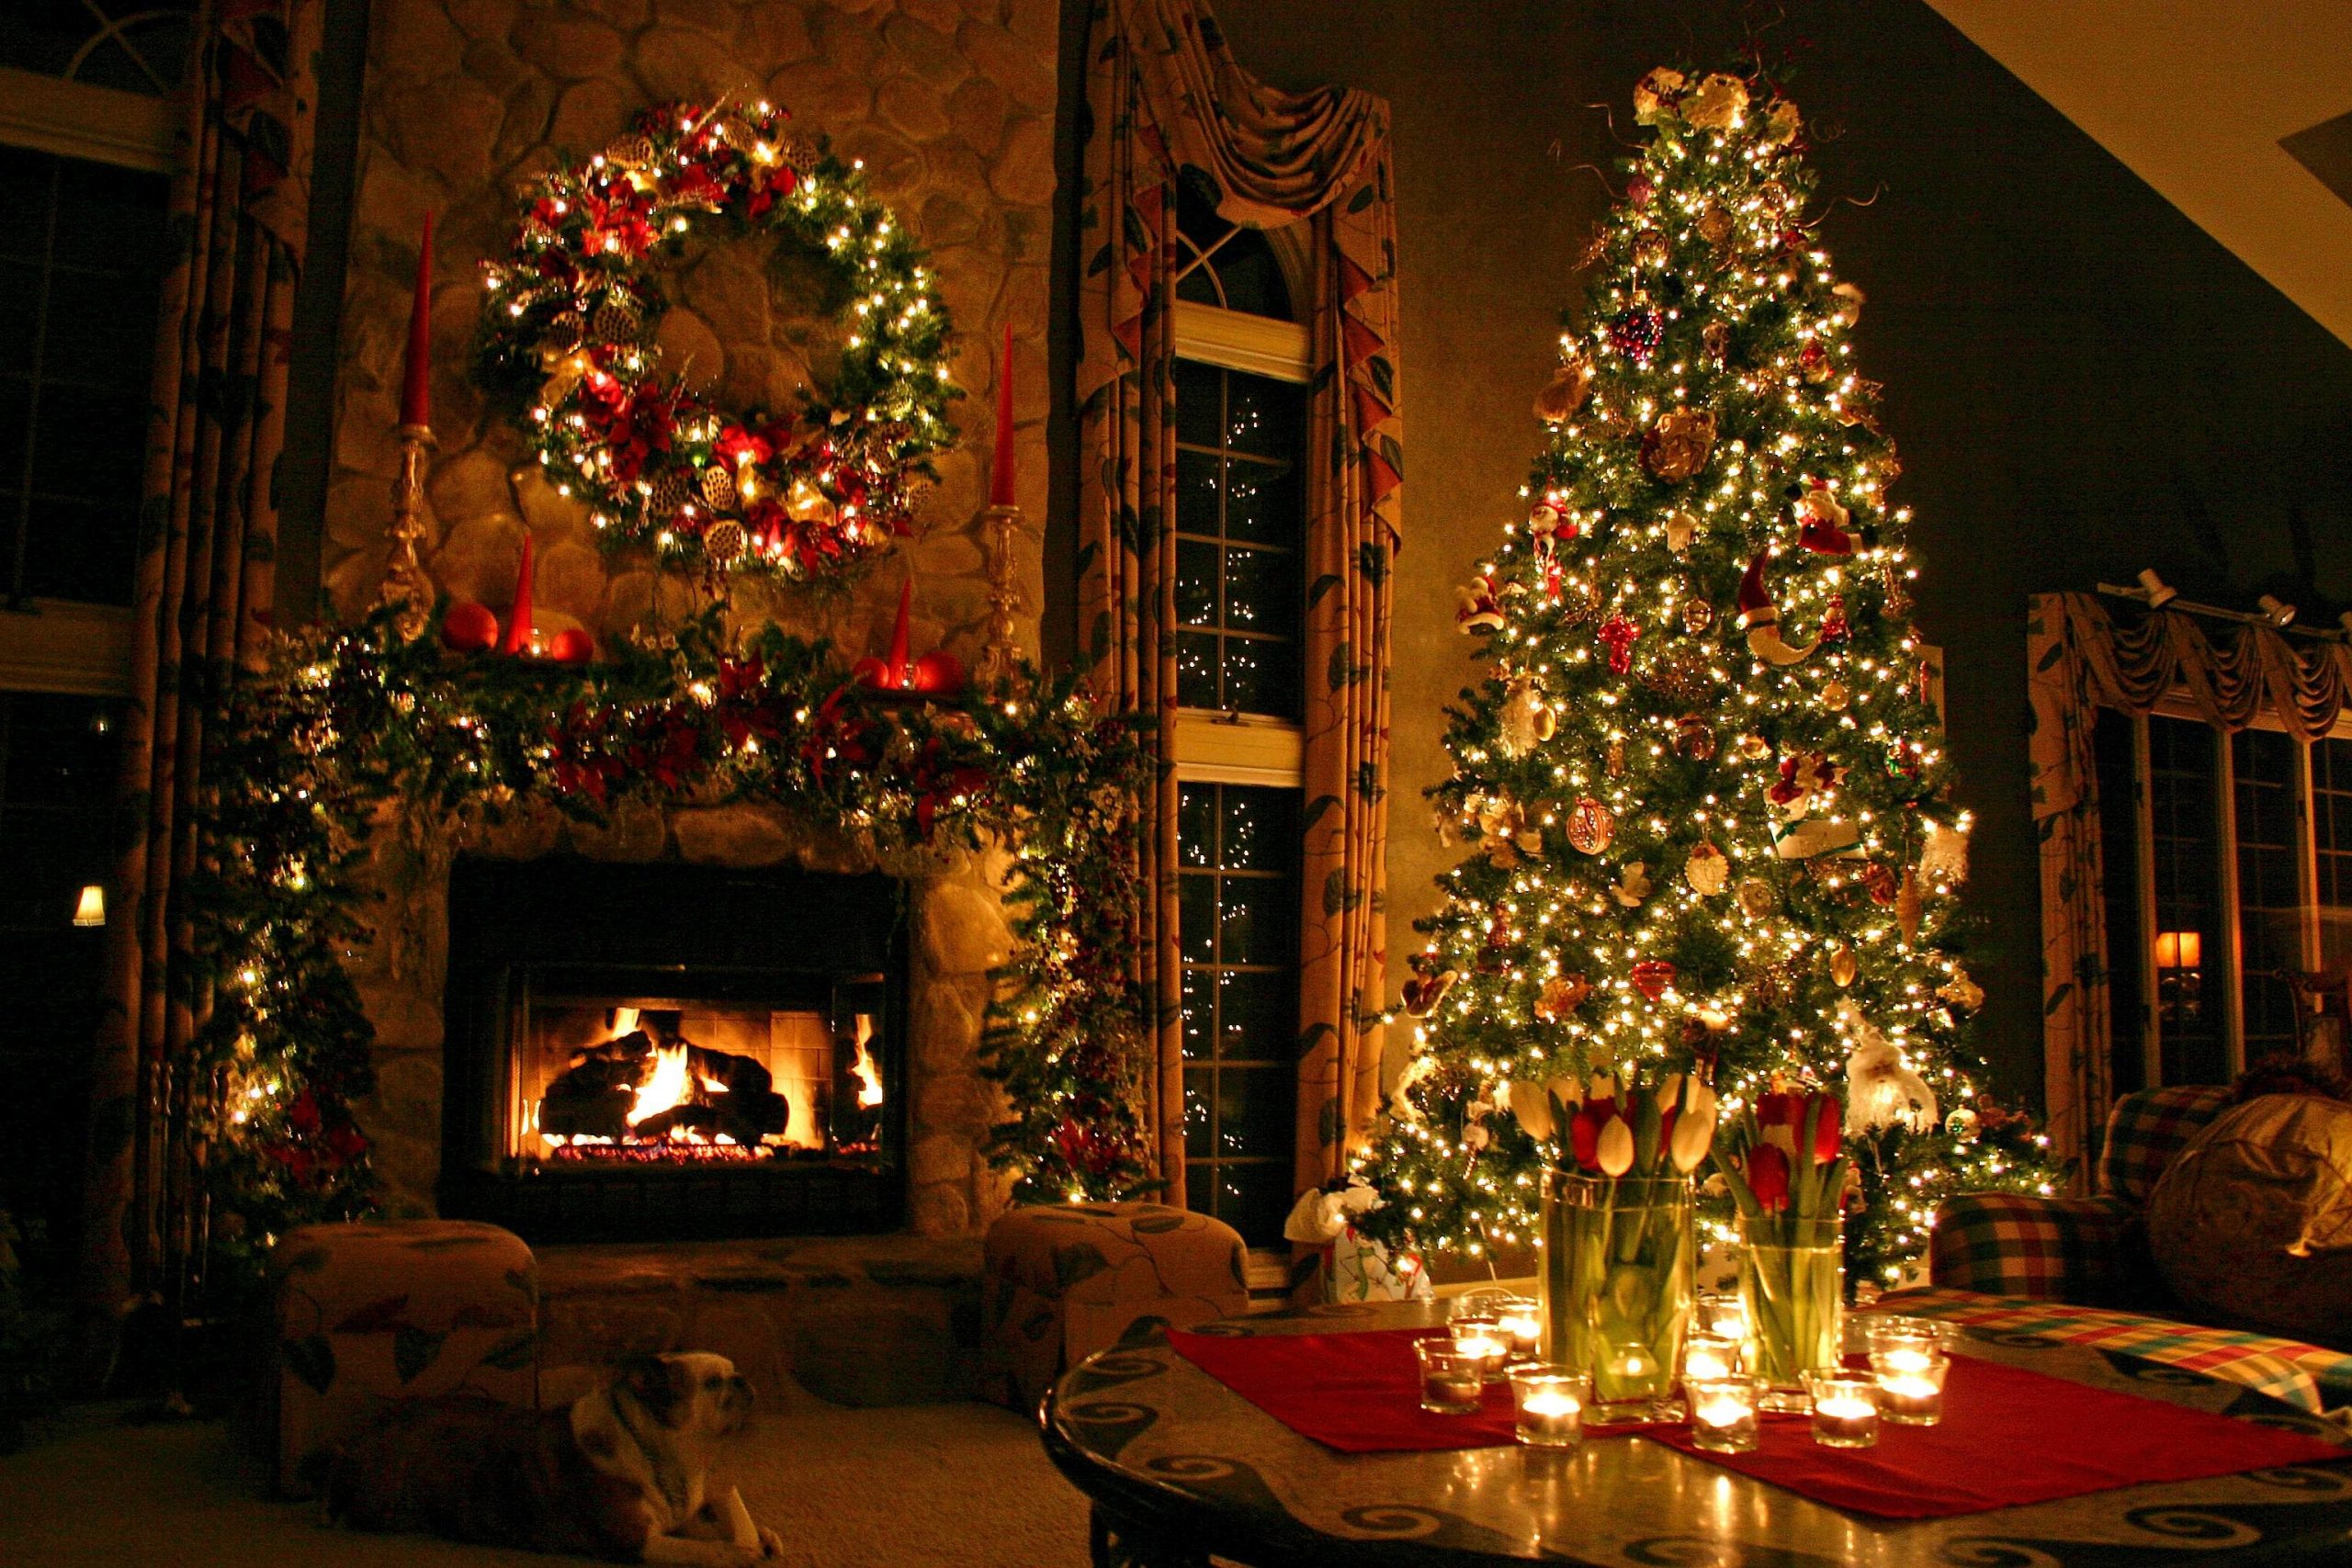 Để biết thêm về nguồn gốc của cây thông Noel, hãy xem hình để khám phá những điều thú vị về lịch sử và truyền thống của cây được coi là biểu tượng của mùa Giáng sinh.